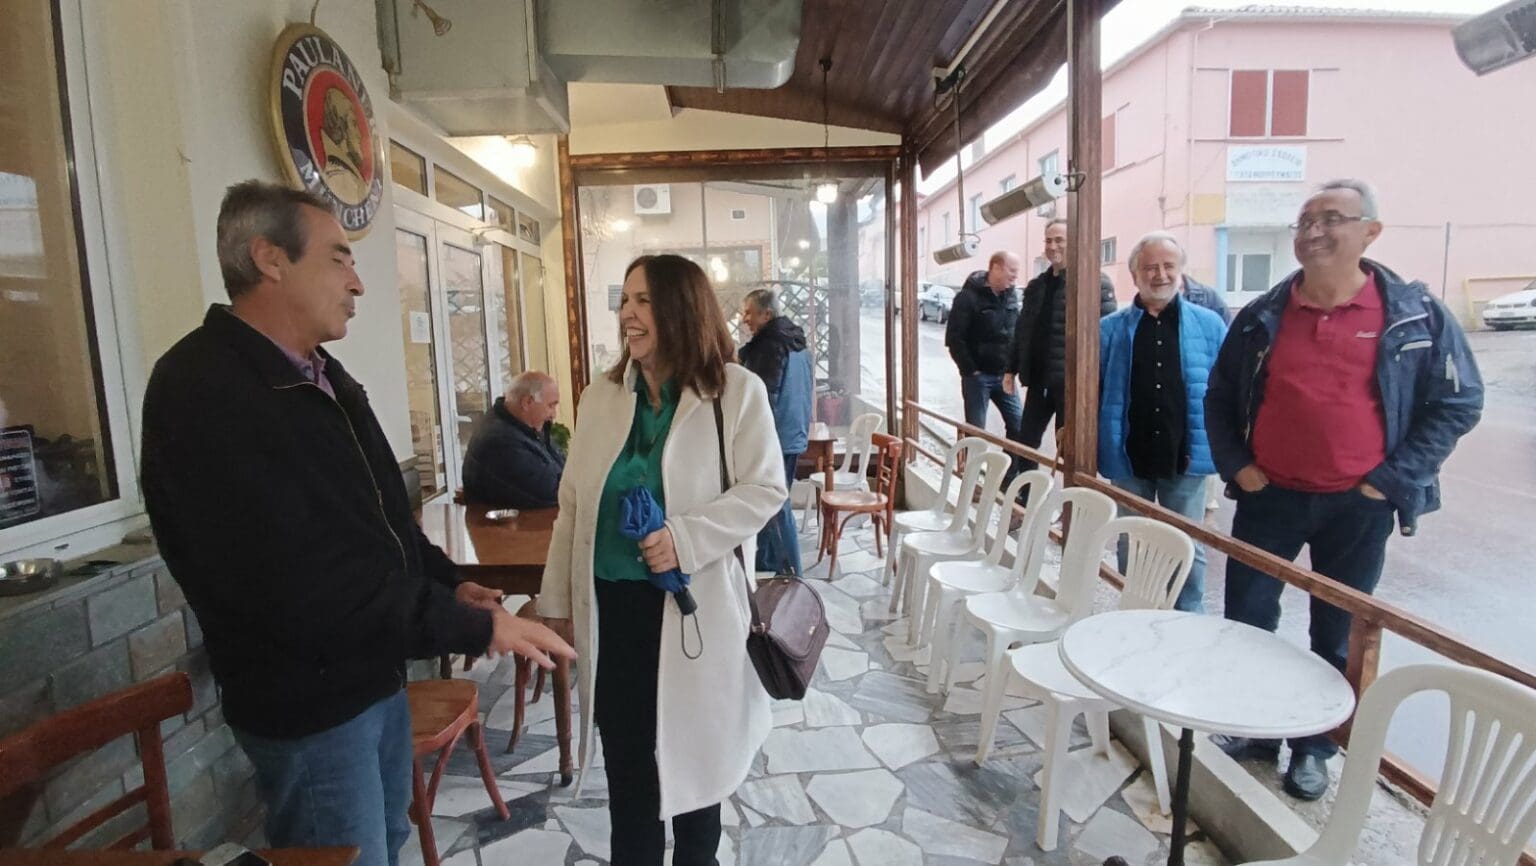 «Καλλιόπη Βέττα: Το πρόγραμμα του ΣΥΡΙΖΑ Π.Σ. είναι εγγύηση για τη στήριξη των πολιτών και του κράτους πρόνοιας - Ομιλία στον Βελβεντό και προεκλογικές περιοδείες»